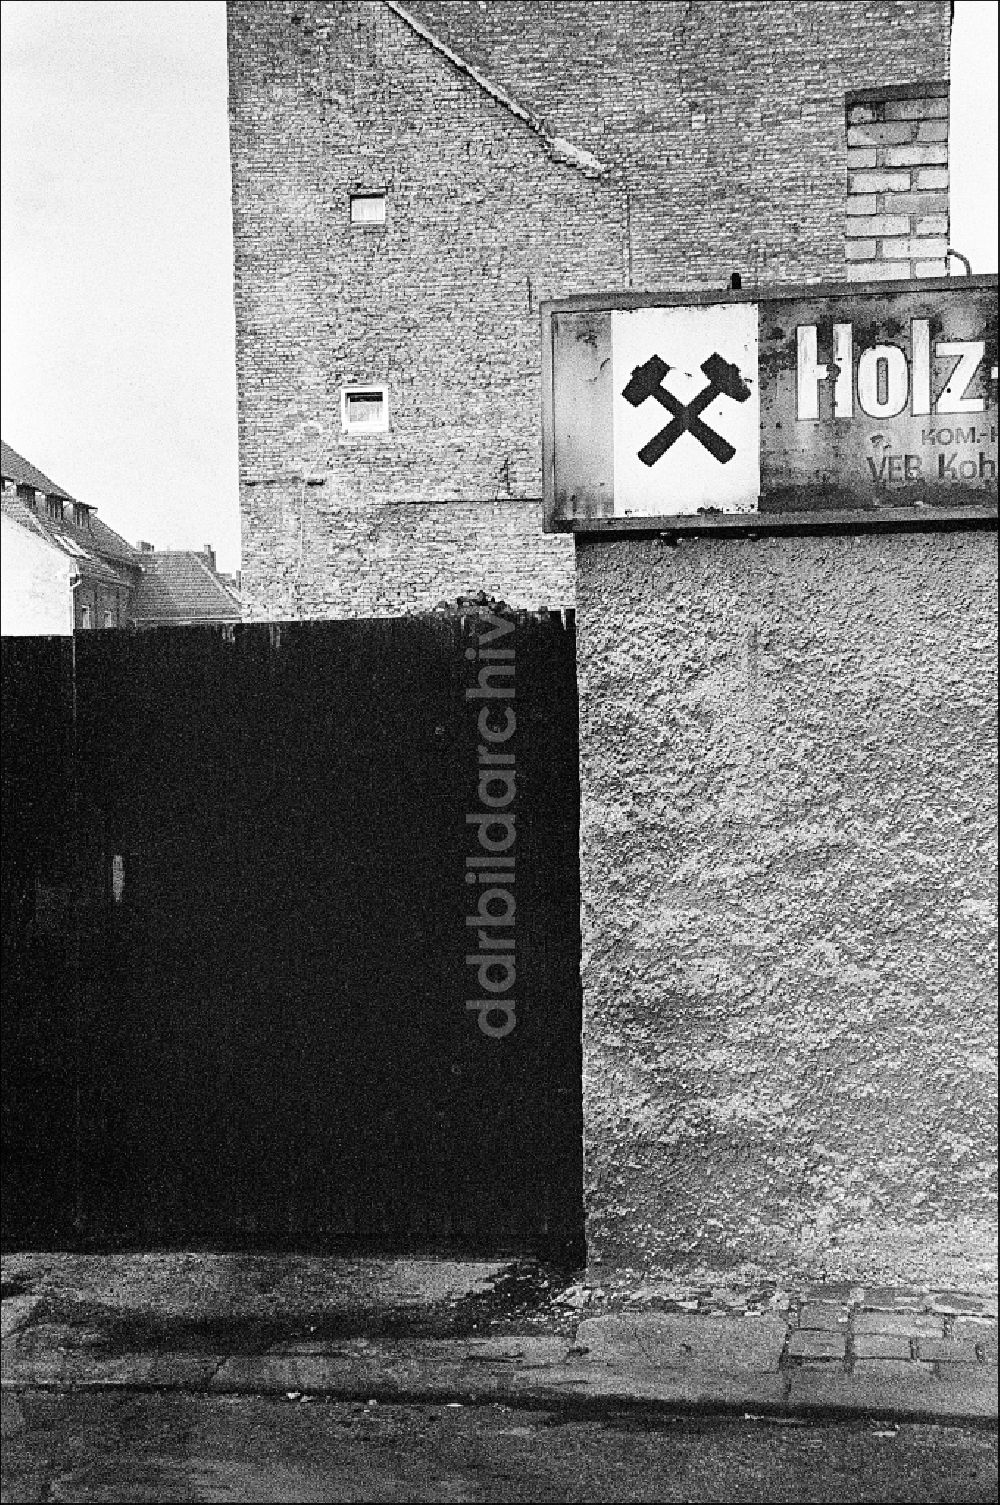 DDR-Bildarchiv: Berlin - Eingangsbereich eines Kohlehandels im Ortsteil Mitte in Berlin in der DDR